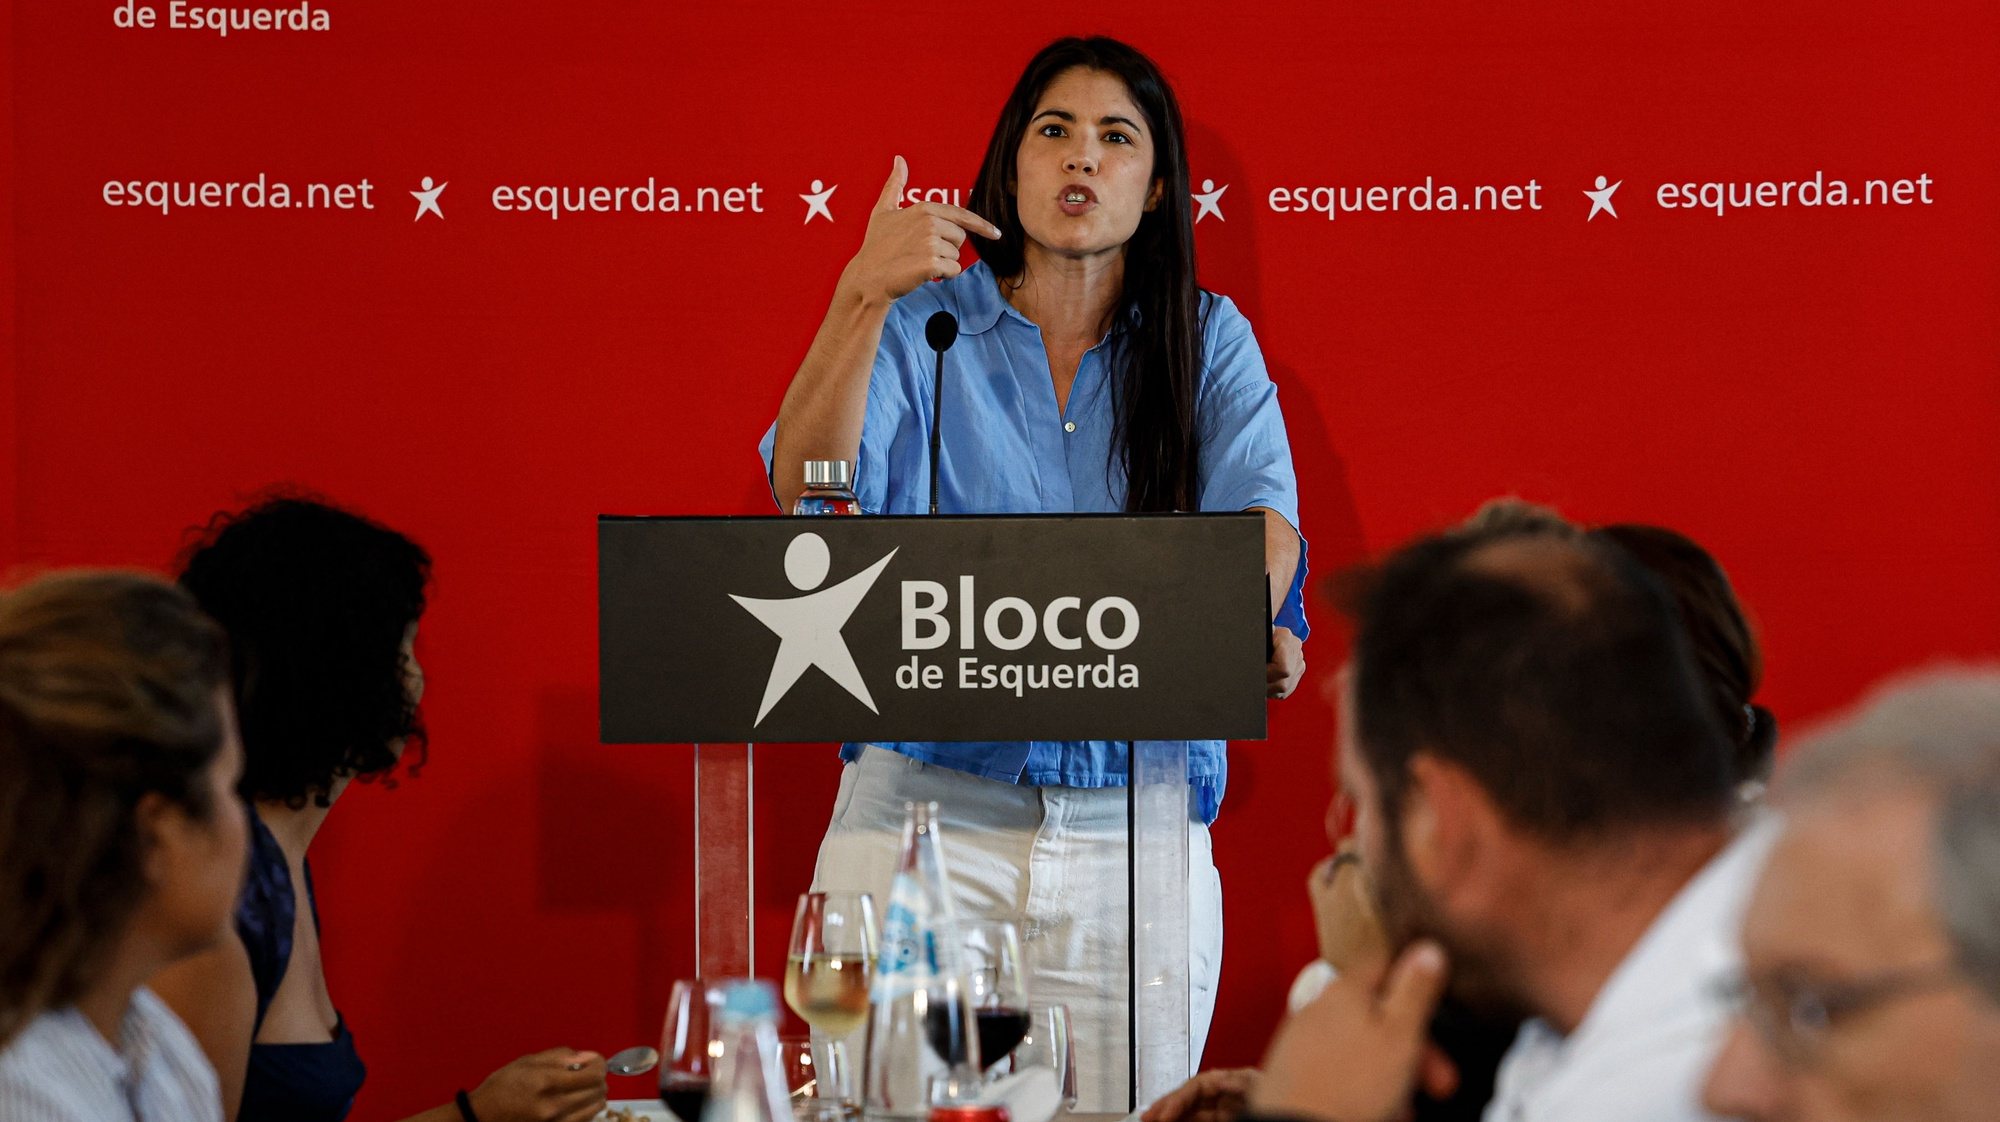 A coordenadora do Bloco de Esquerda (BE), Mariana Mortágua, participa  no fórum Climático - da Europa ao Algarve, com o objetivo de aprofundar o debate sobre crise climática e o combate ao negacionismo, com apoio de cientistas, ativistas e representantes politícos, Faro,7 de outubro de 2023. LUÍS FORRA/LUSA